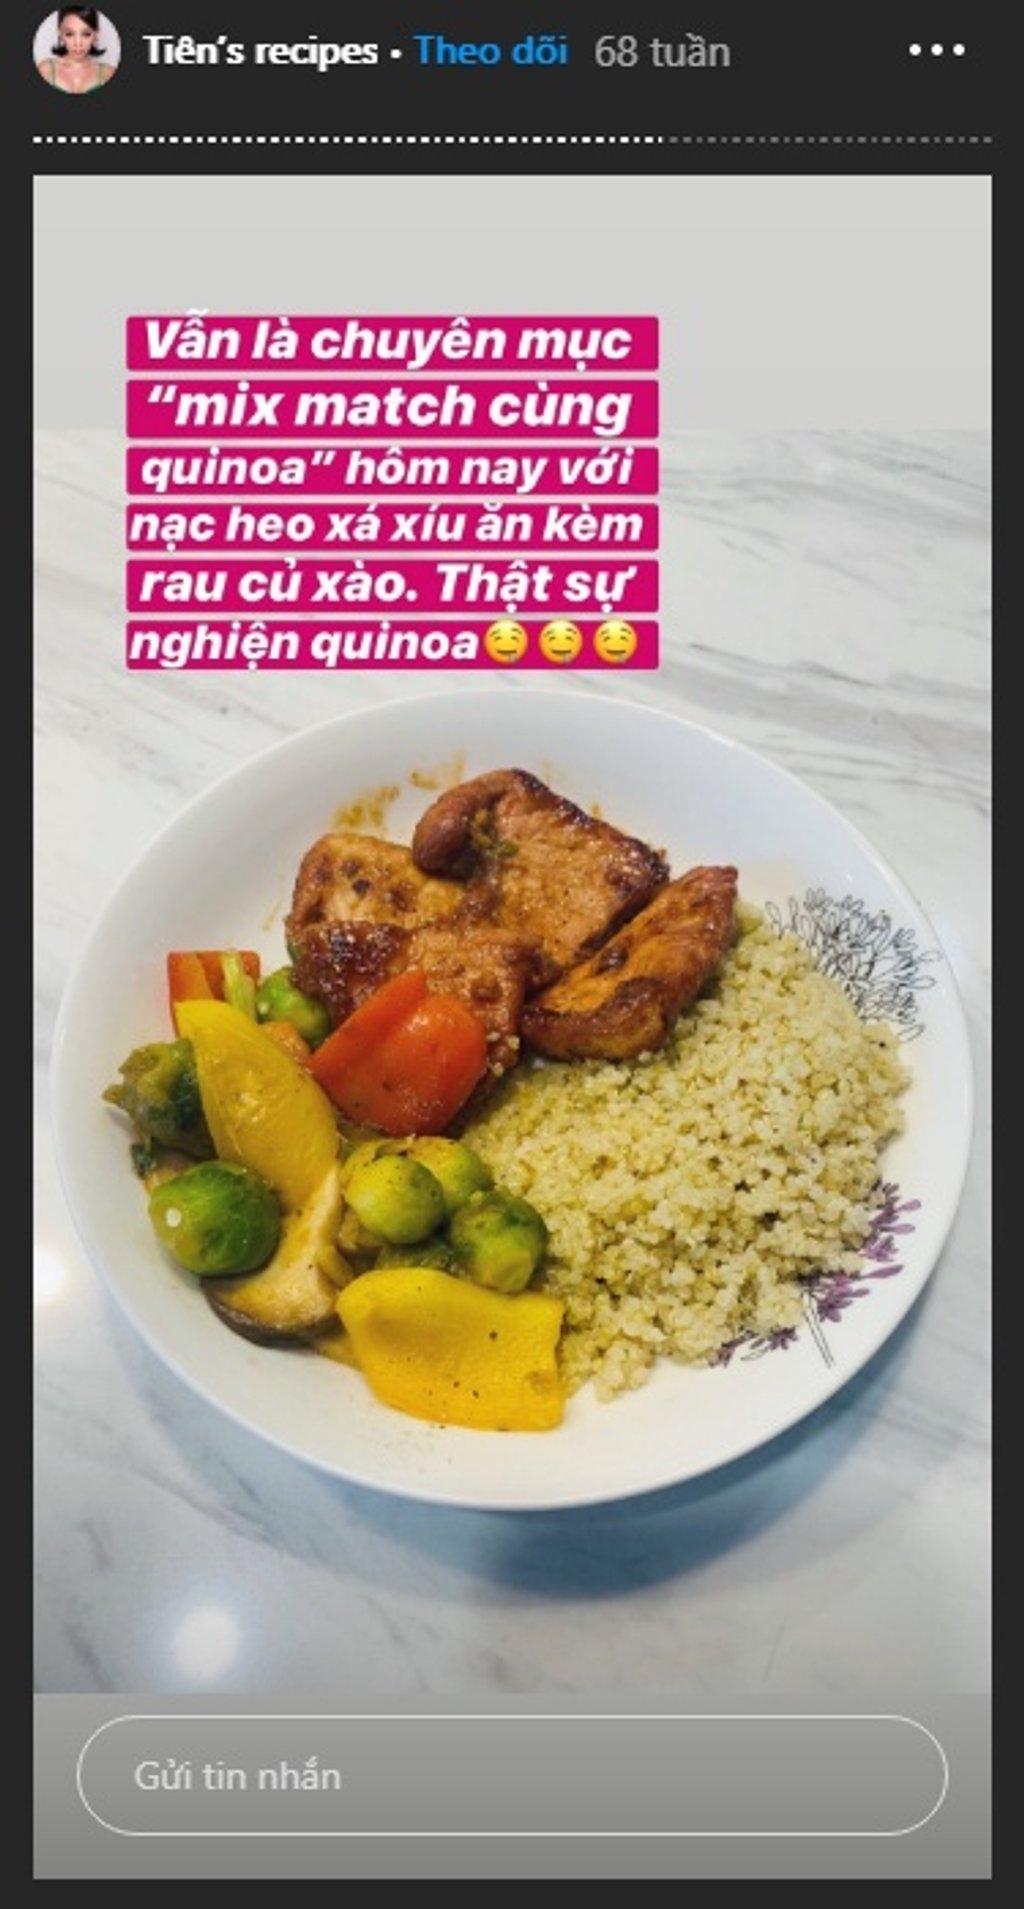 Thực đơn của Tóc Tiên thường xuyên xuất hiện quinoa.